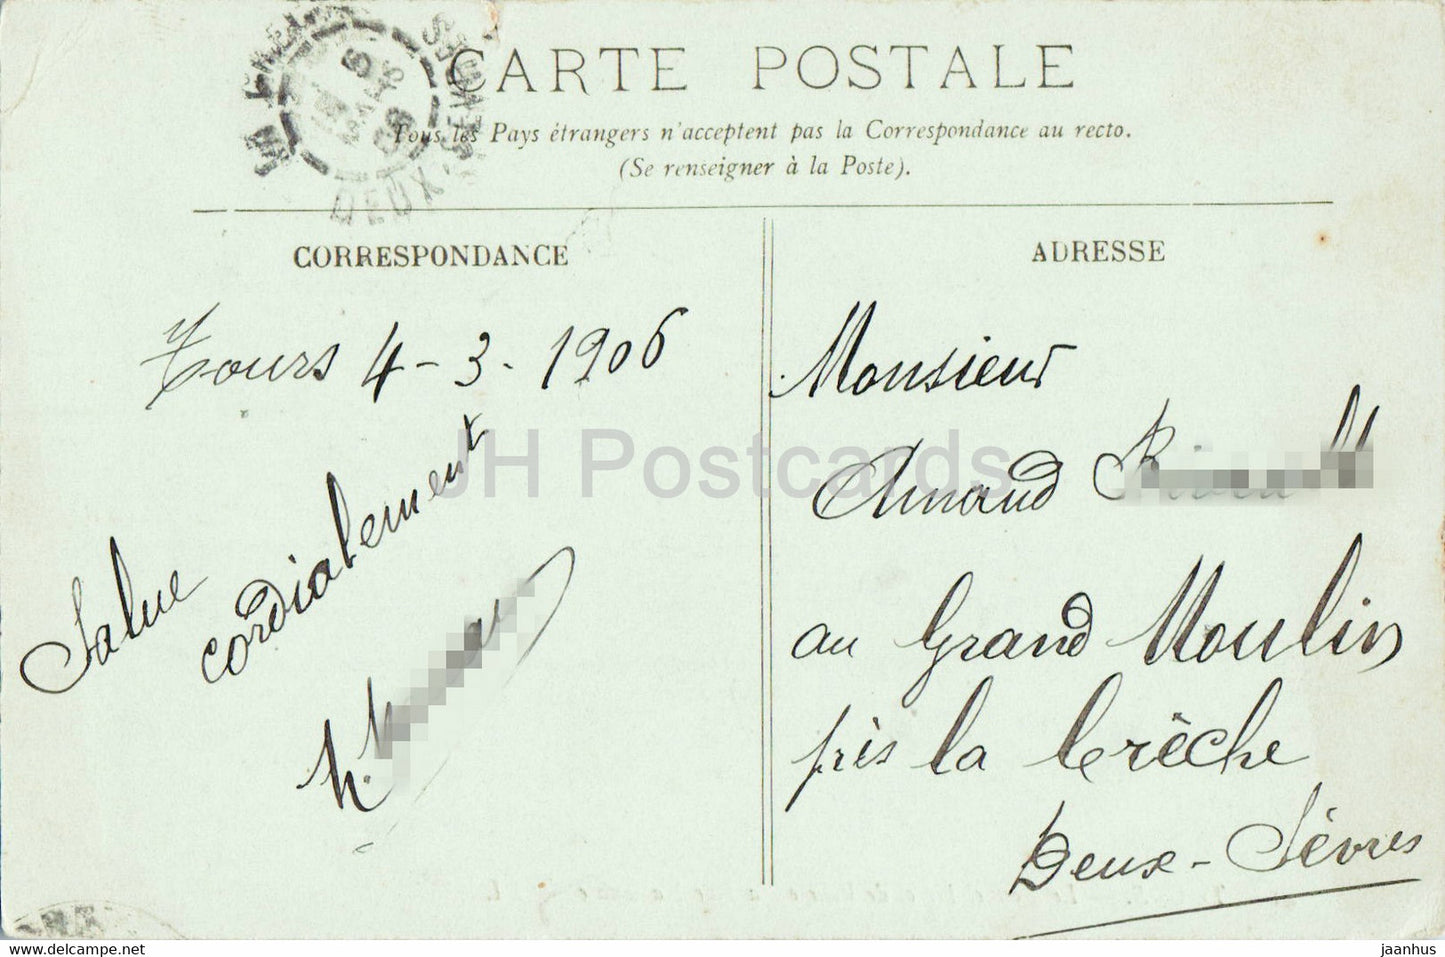 Tours - Le Nouvel Hotel de Ville et la Rue Nationale - 41 - old postcard - 1906 - France - used